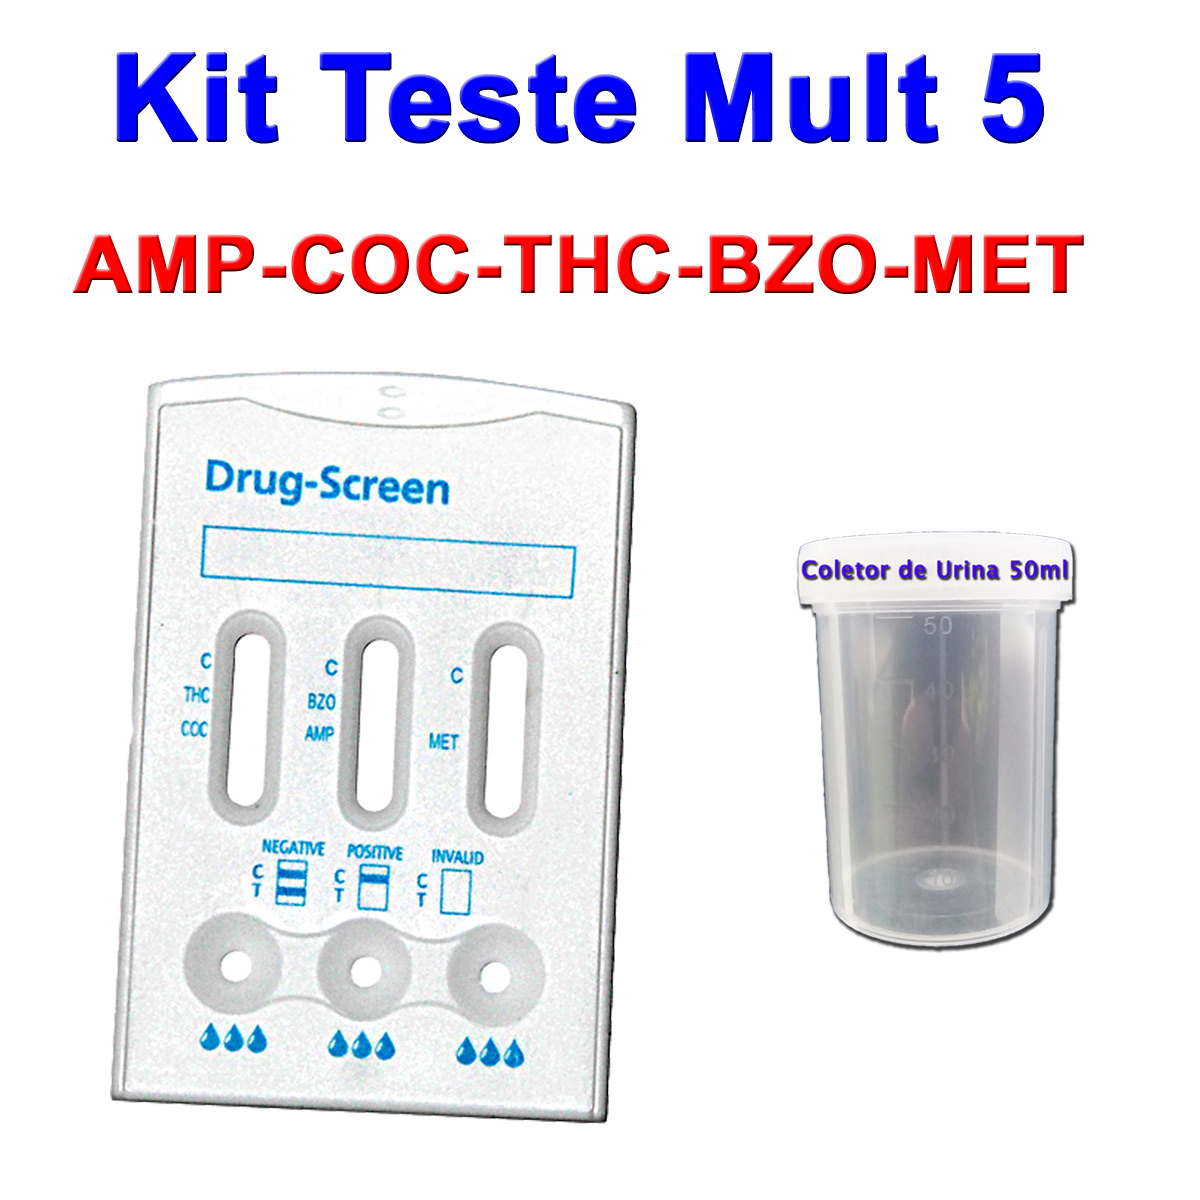 5 kits Para Teste Mult 5  - Loja Saúde - Testes Para COVID-19 e Drogas, Máscaras e Suplementos